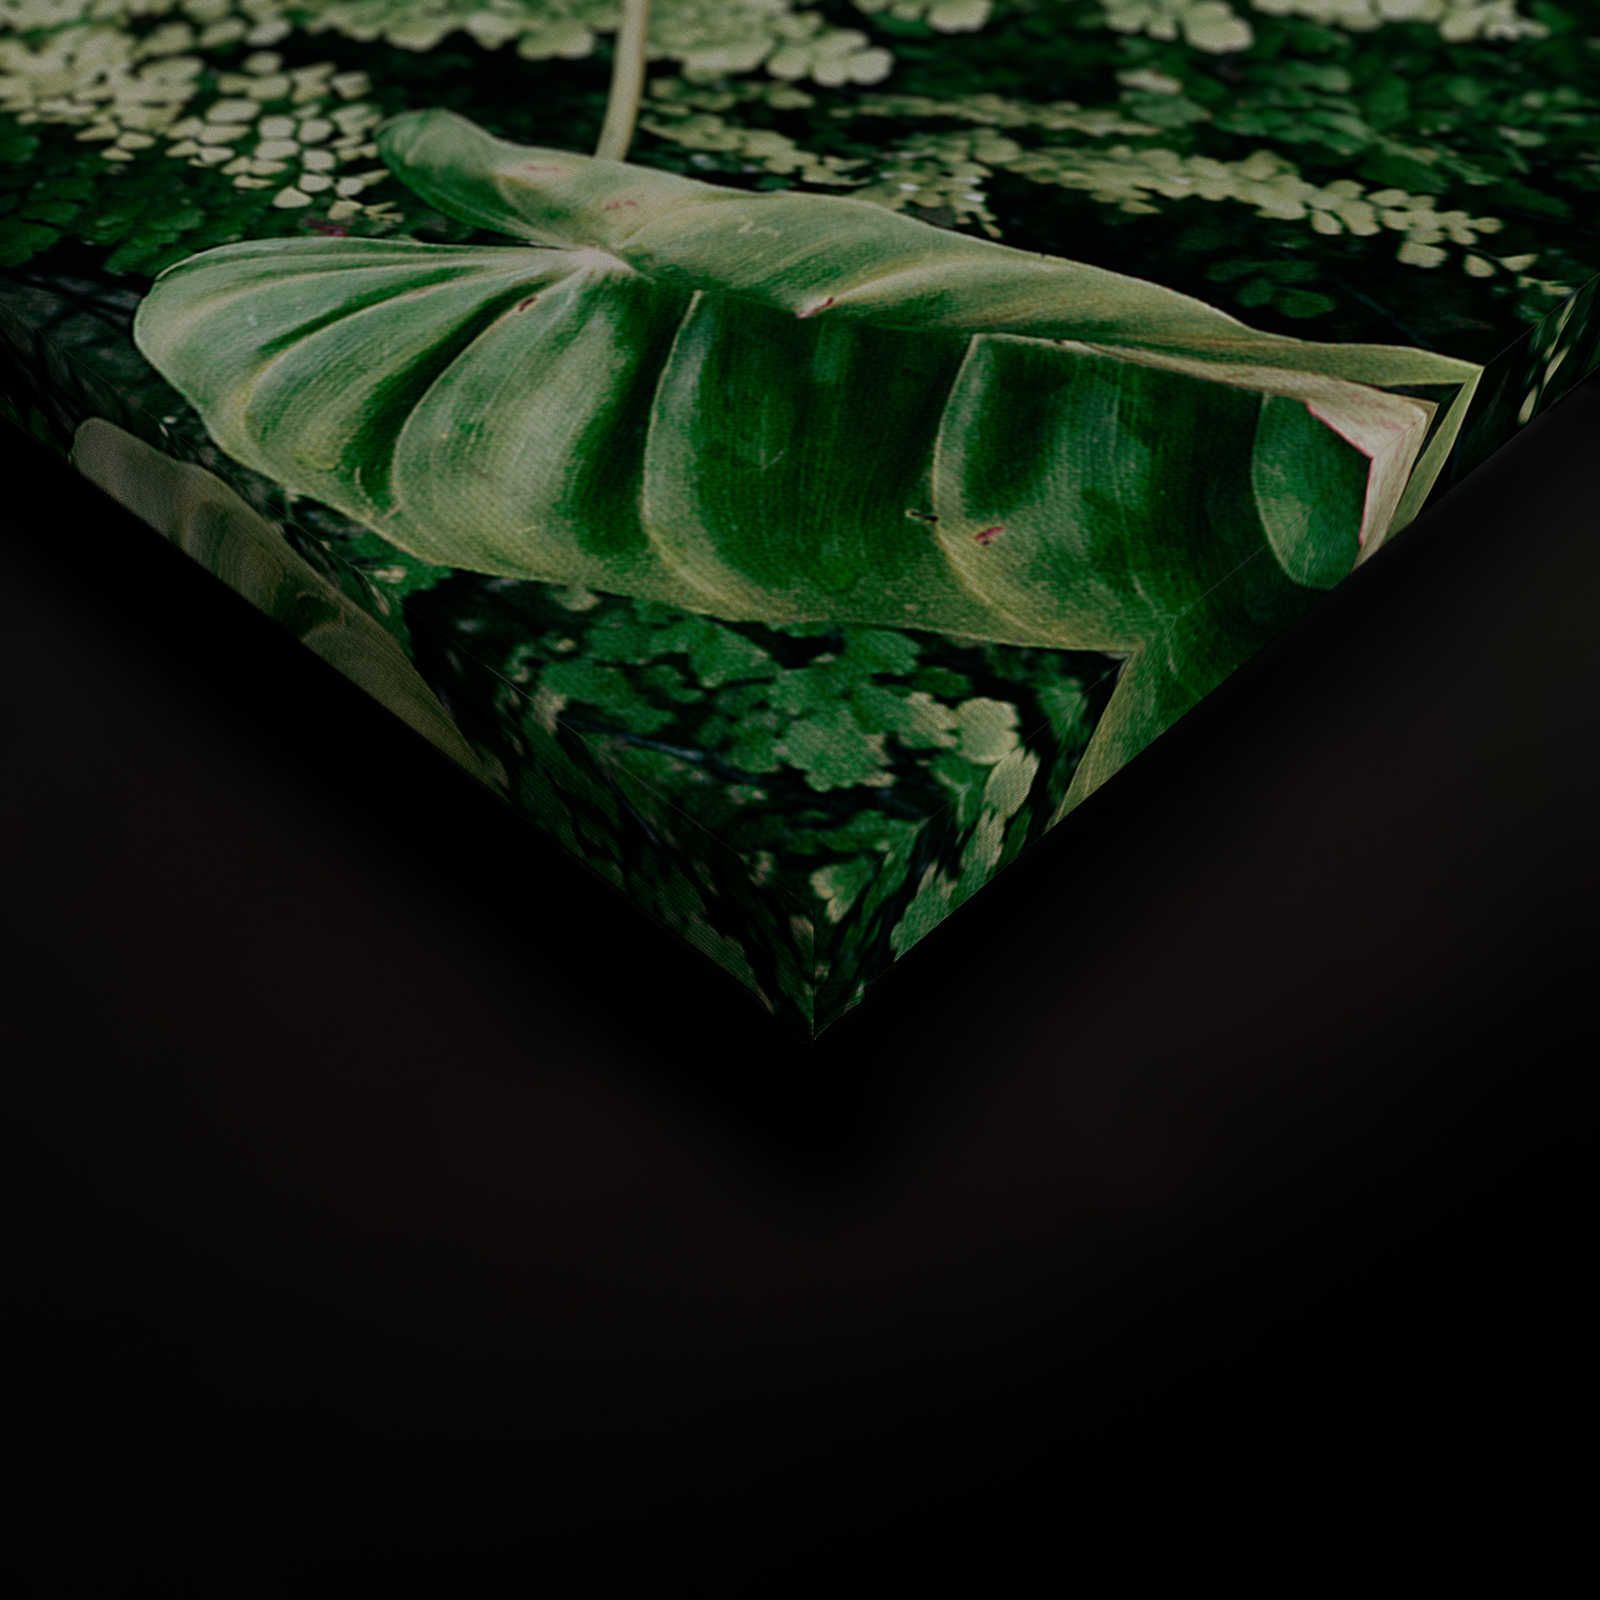             Deep Green 2 - Canvas schilderij Loofbos, varens & hangplanten - 1.20 m x 0.80 m
        